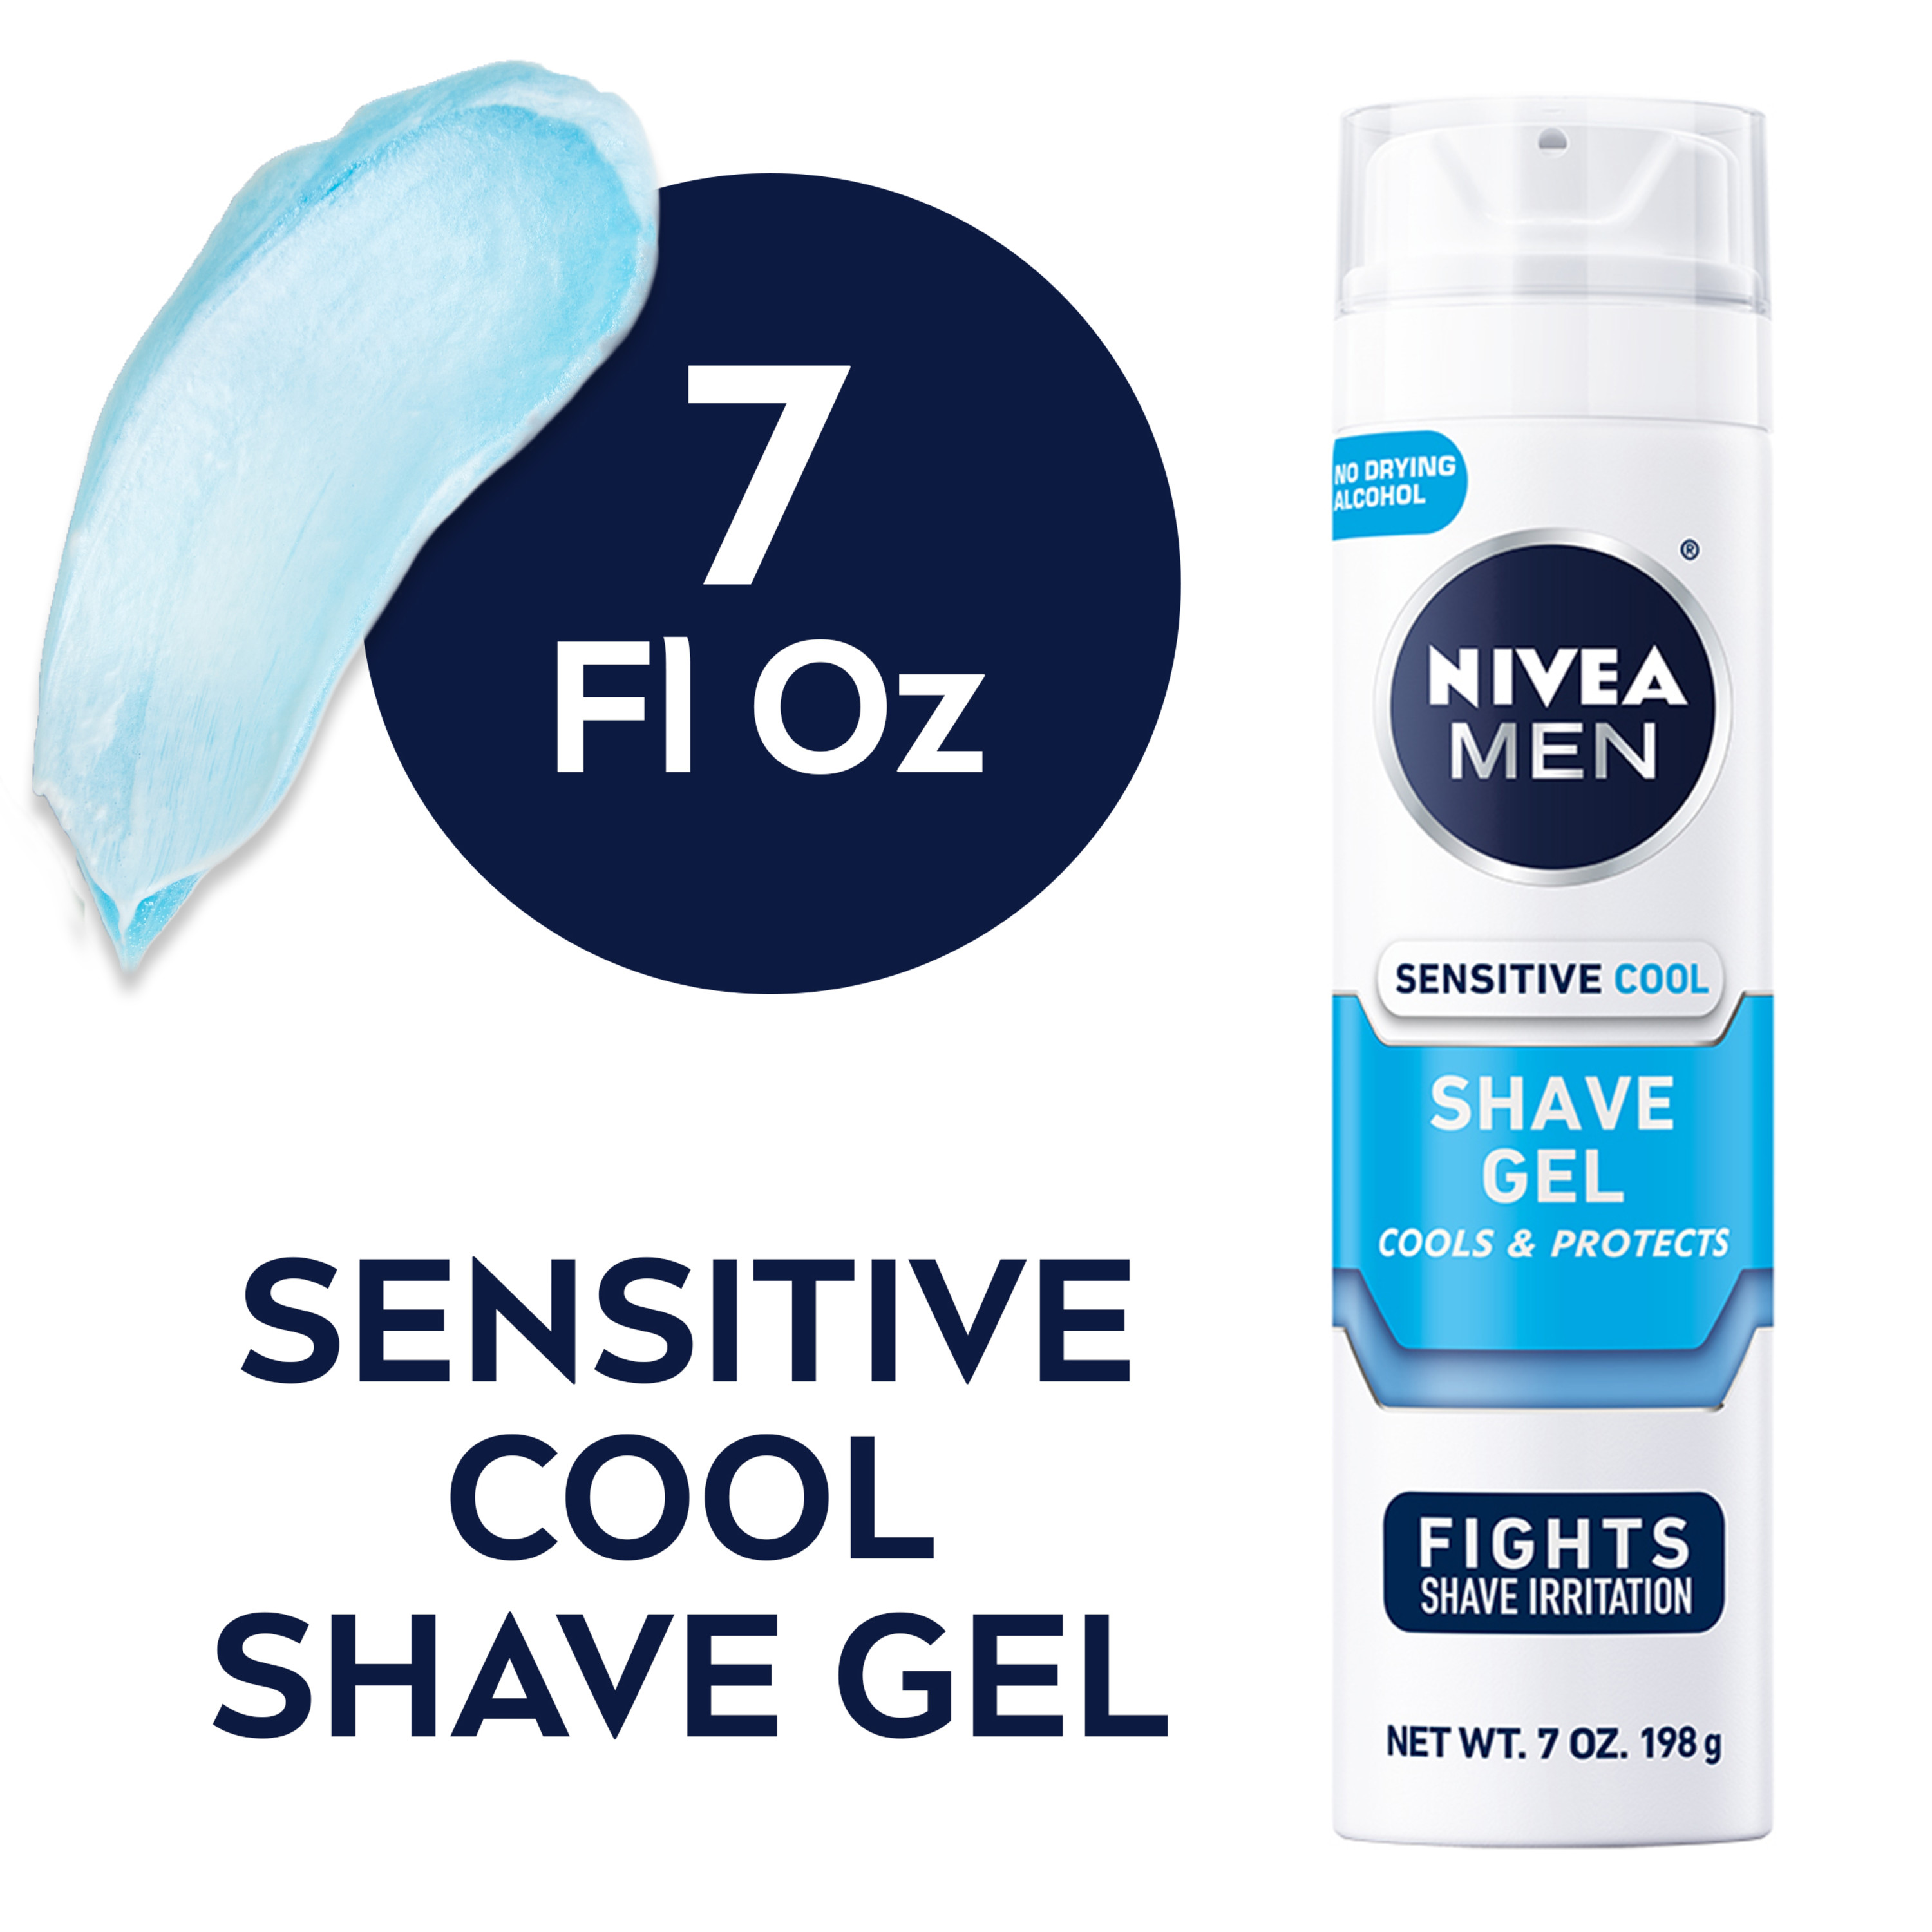 NIVEA MEN Sensitive Cooling Shave Gel, 7 Oz Can - image 1 of 14